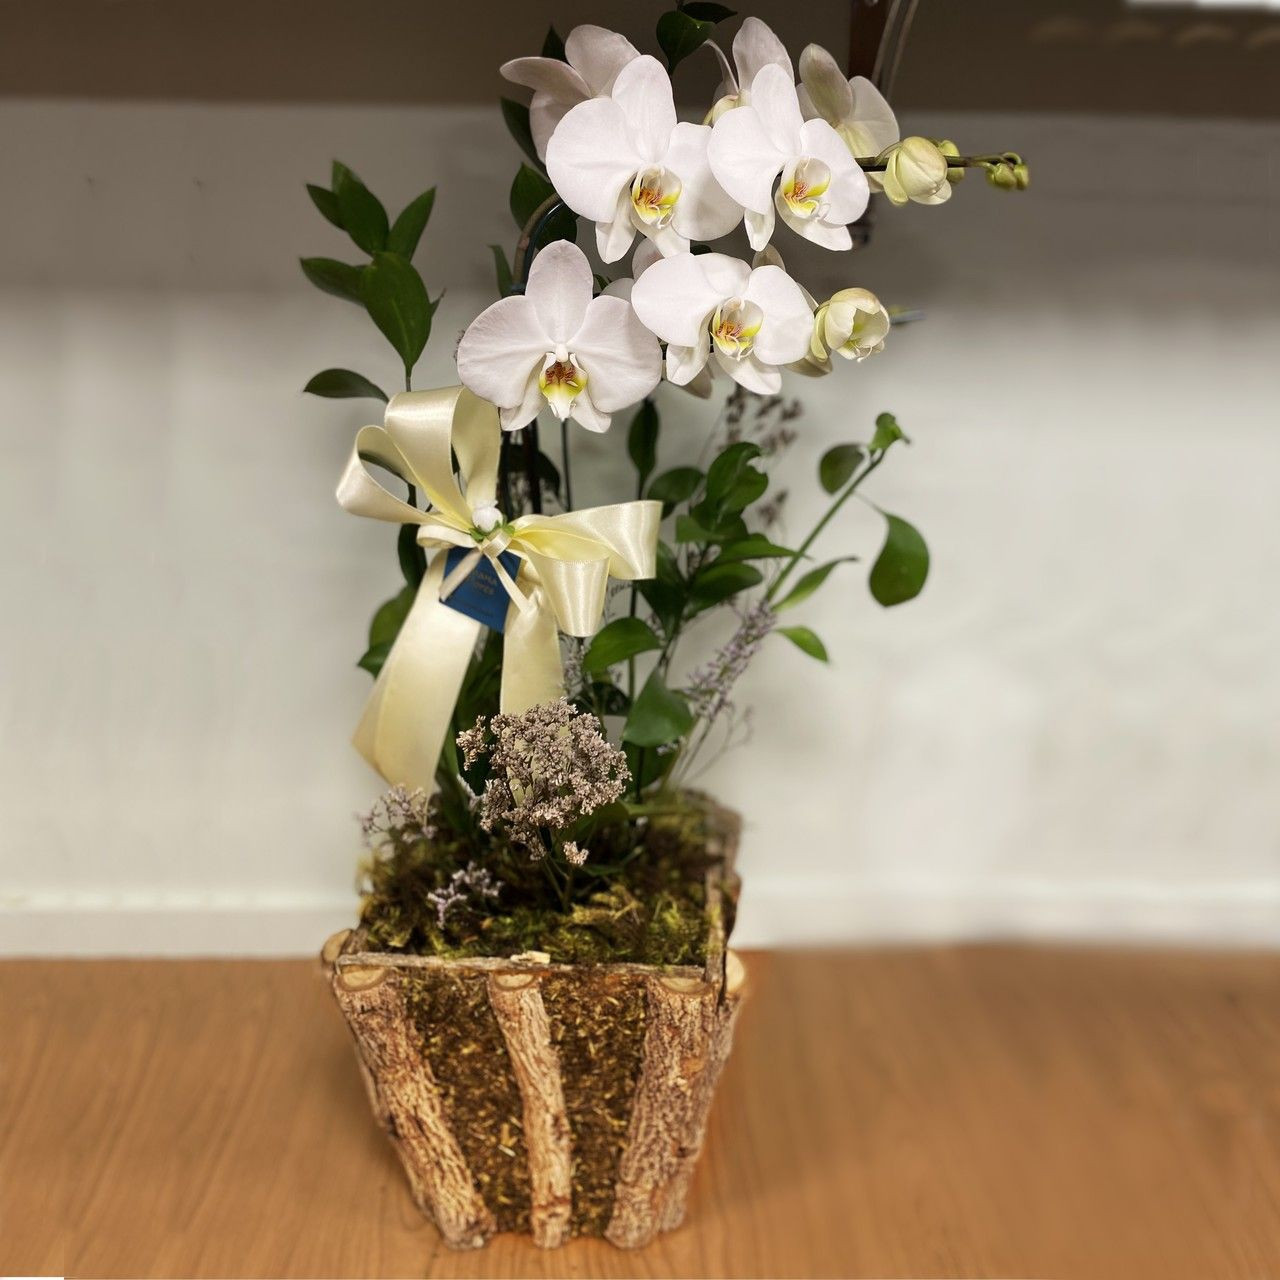 flores baratas e como cuidar das orquídeas,entrega para o Brasil.